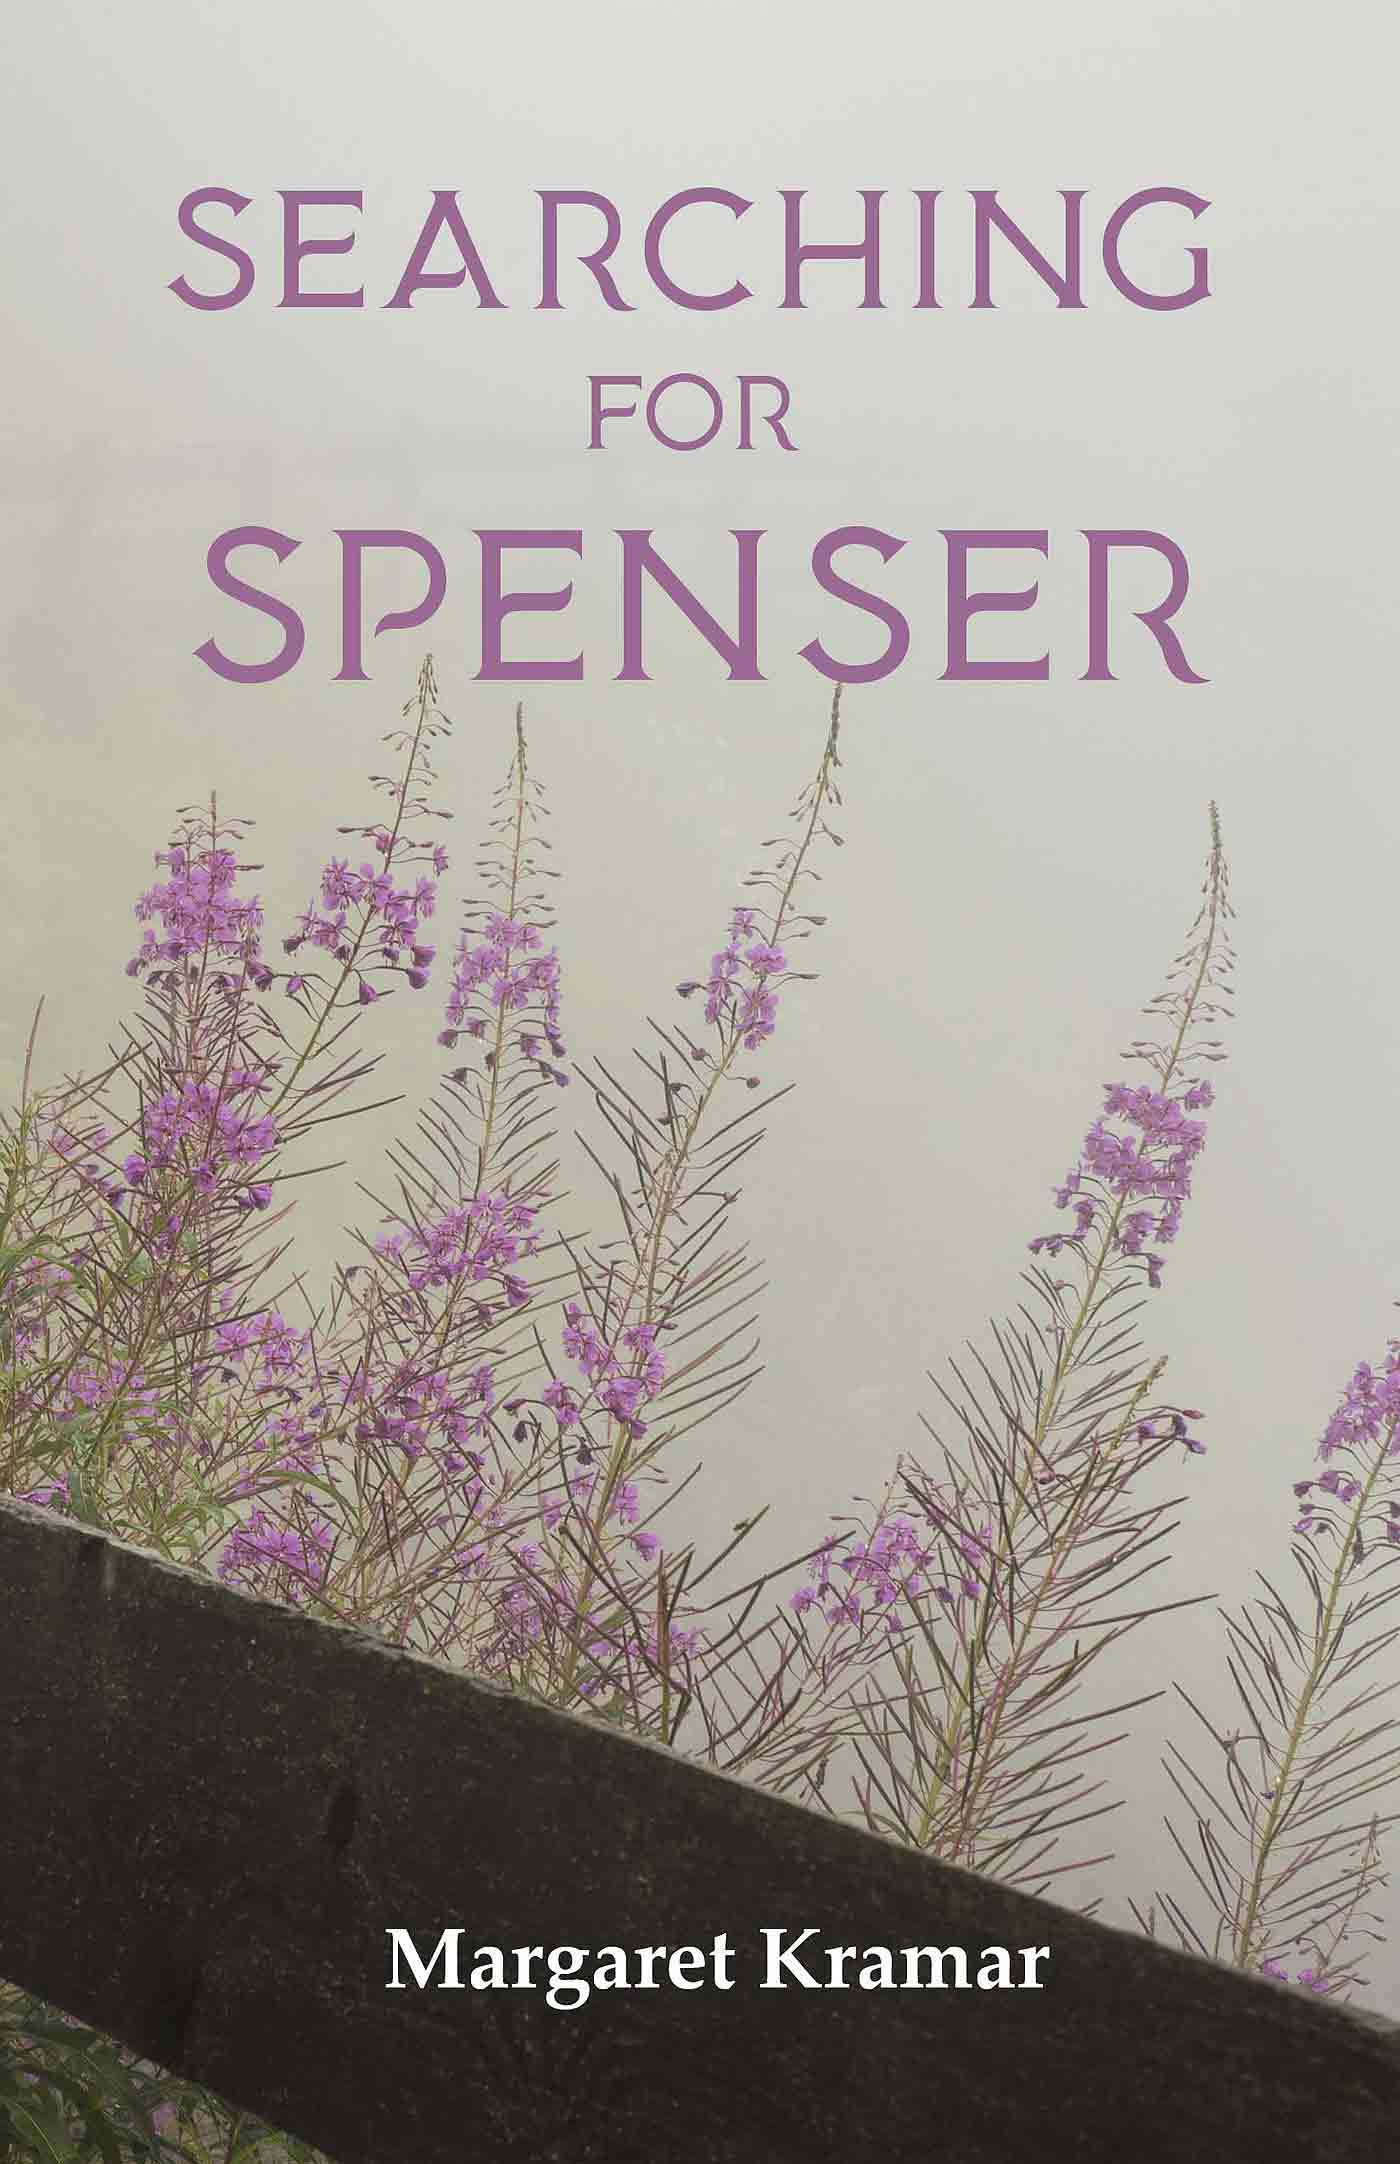 Searching for Spenser a memoir by Margaret Kramar